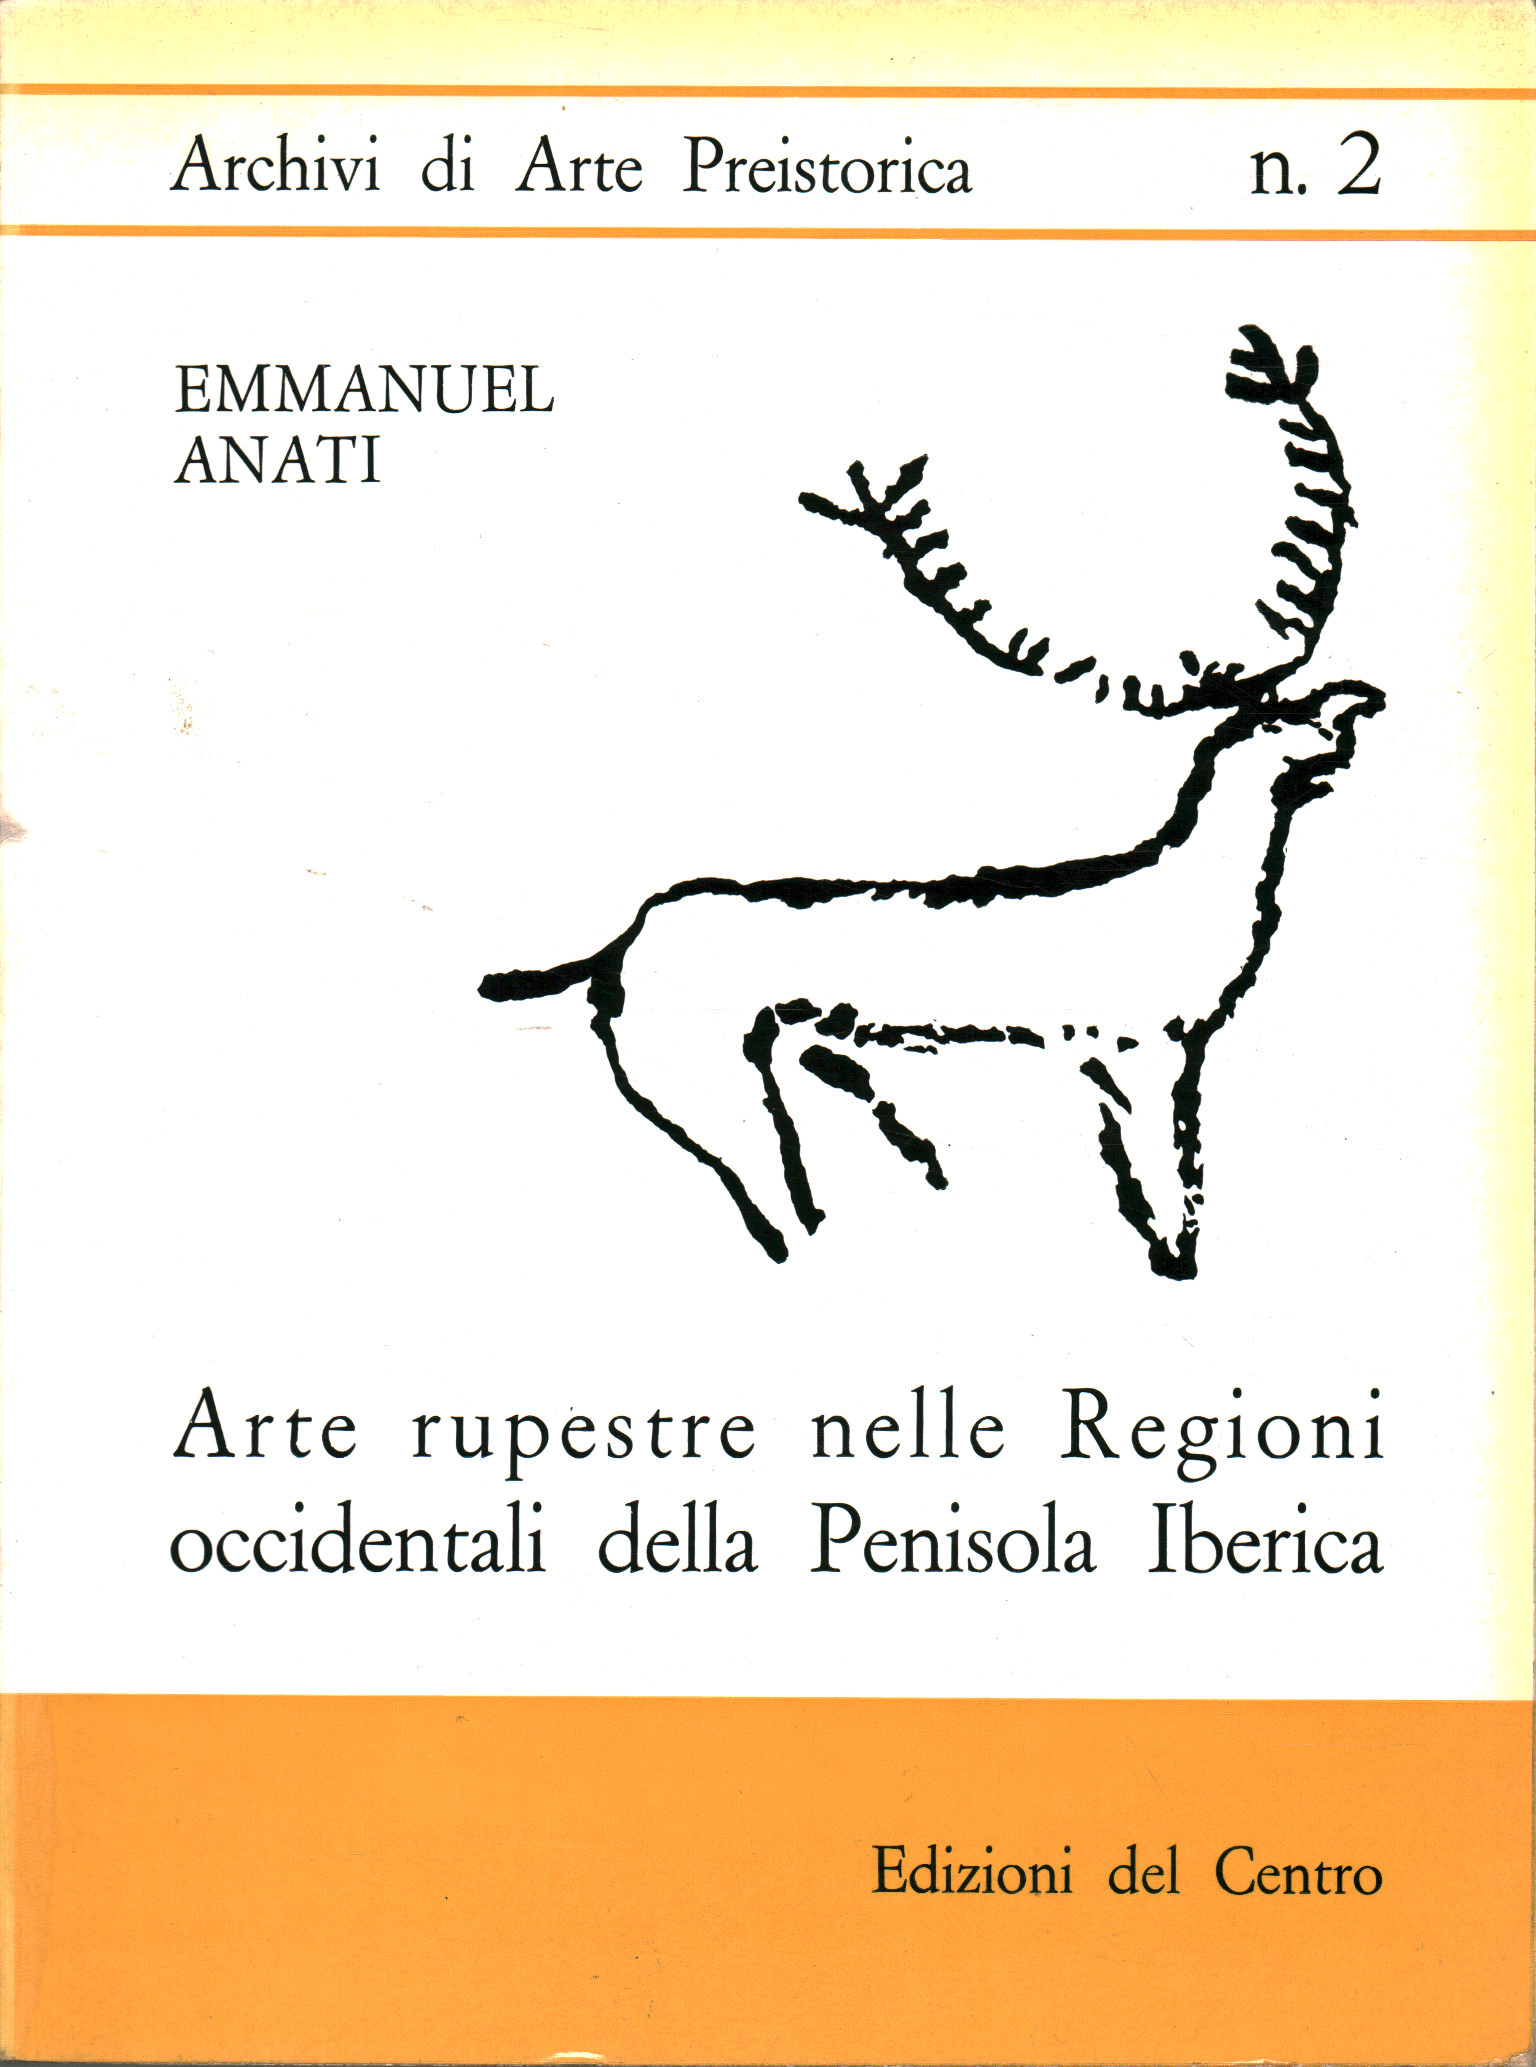 Rock art in the Western Regions of Peni, Emmanuel Anati